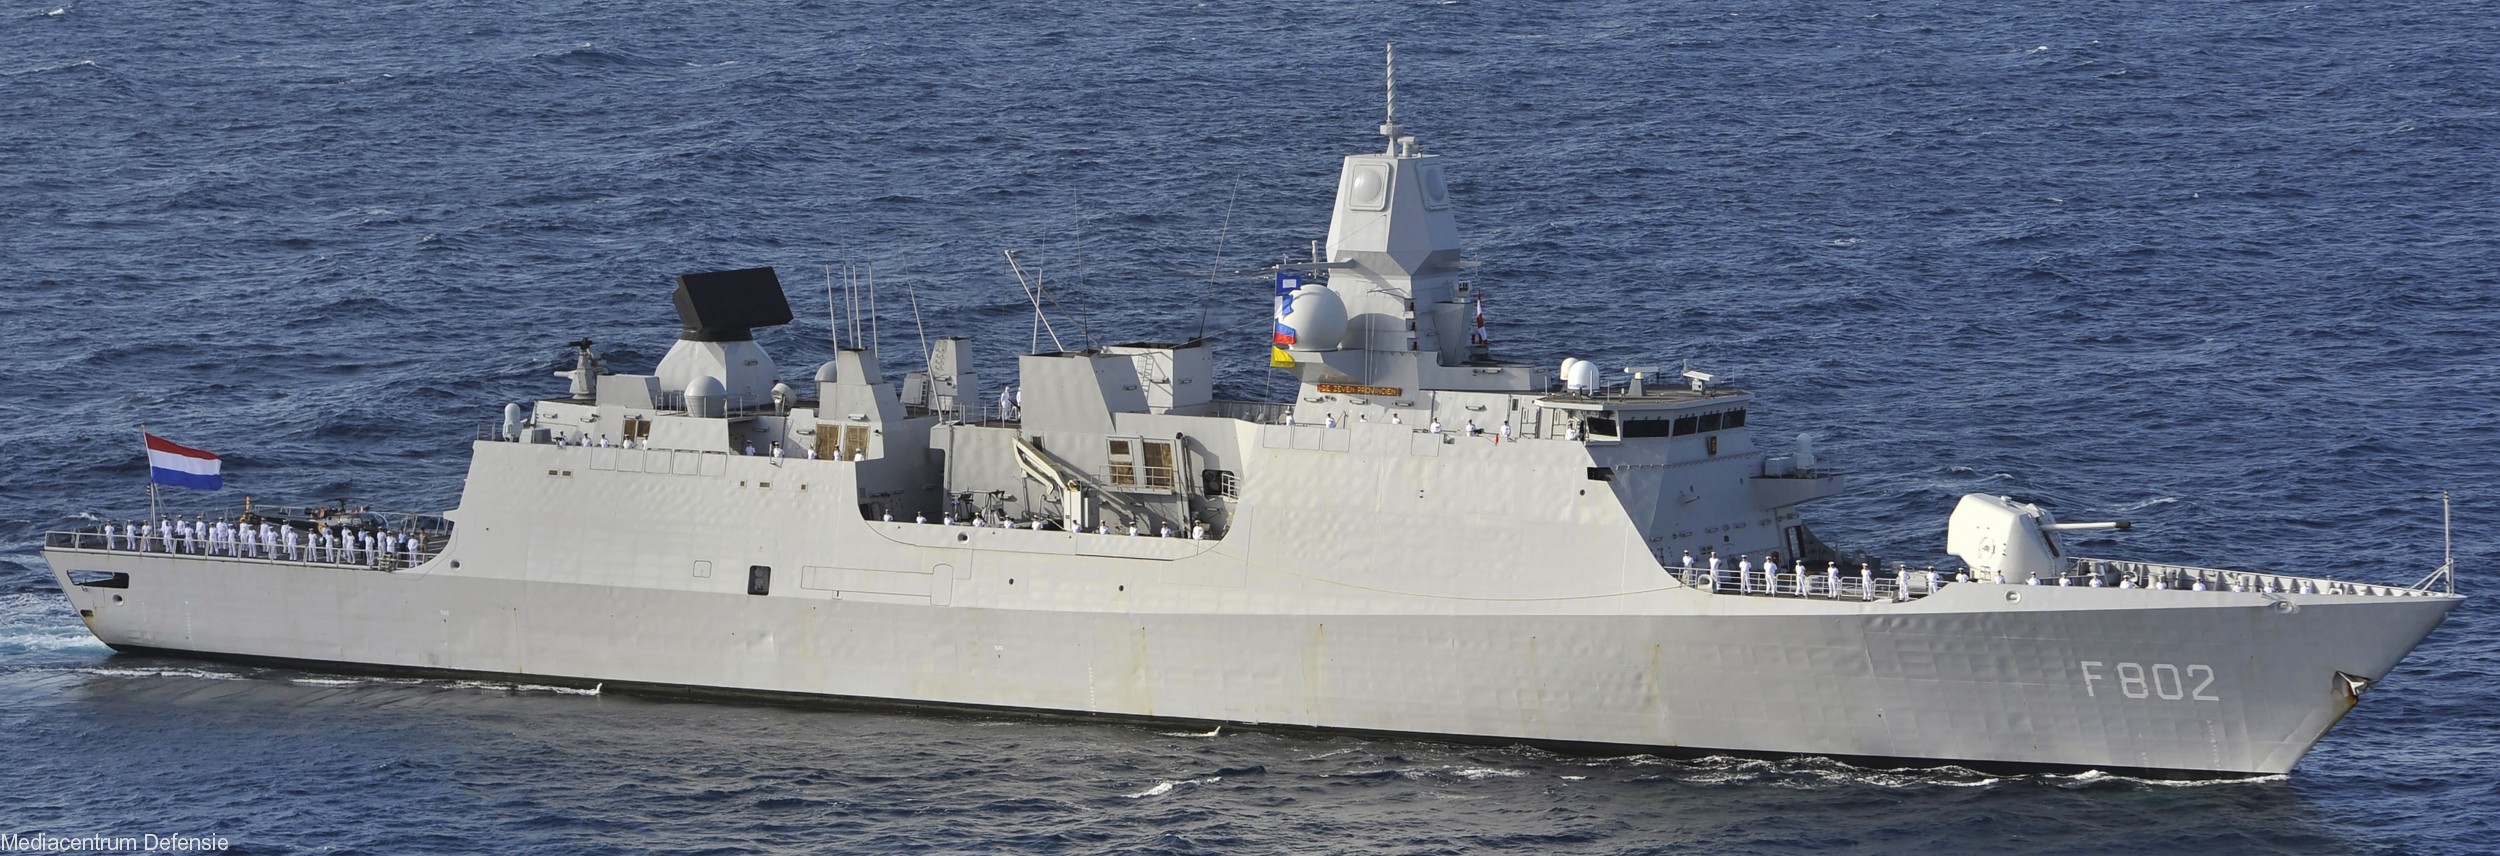 f-802 hnlms de zeven provincien guided missile frigate ffg royal netherlands navy 04 air defense lcf fregat